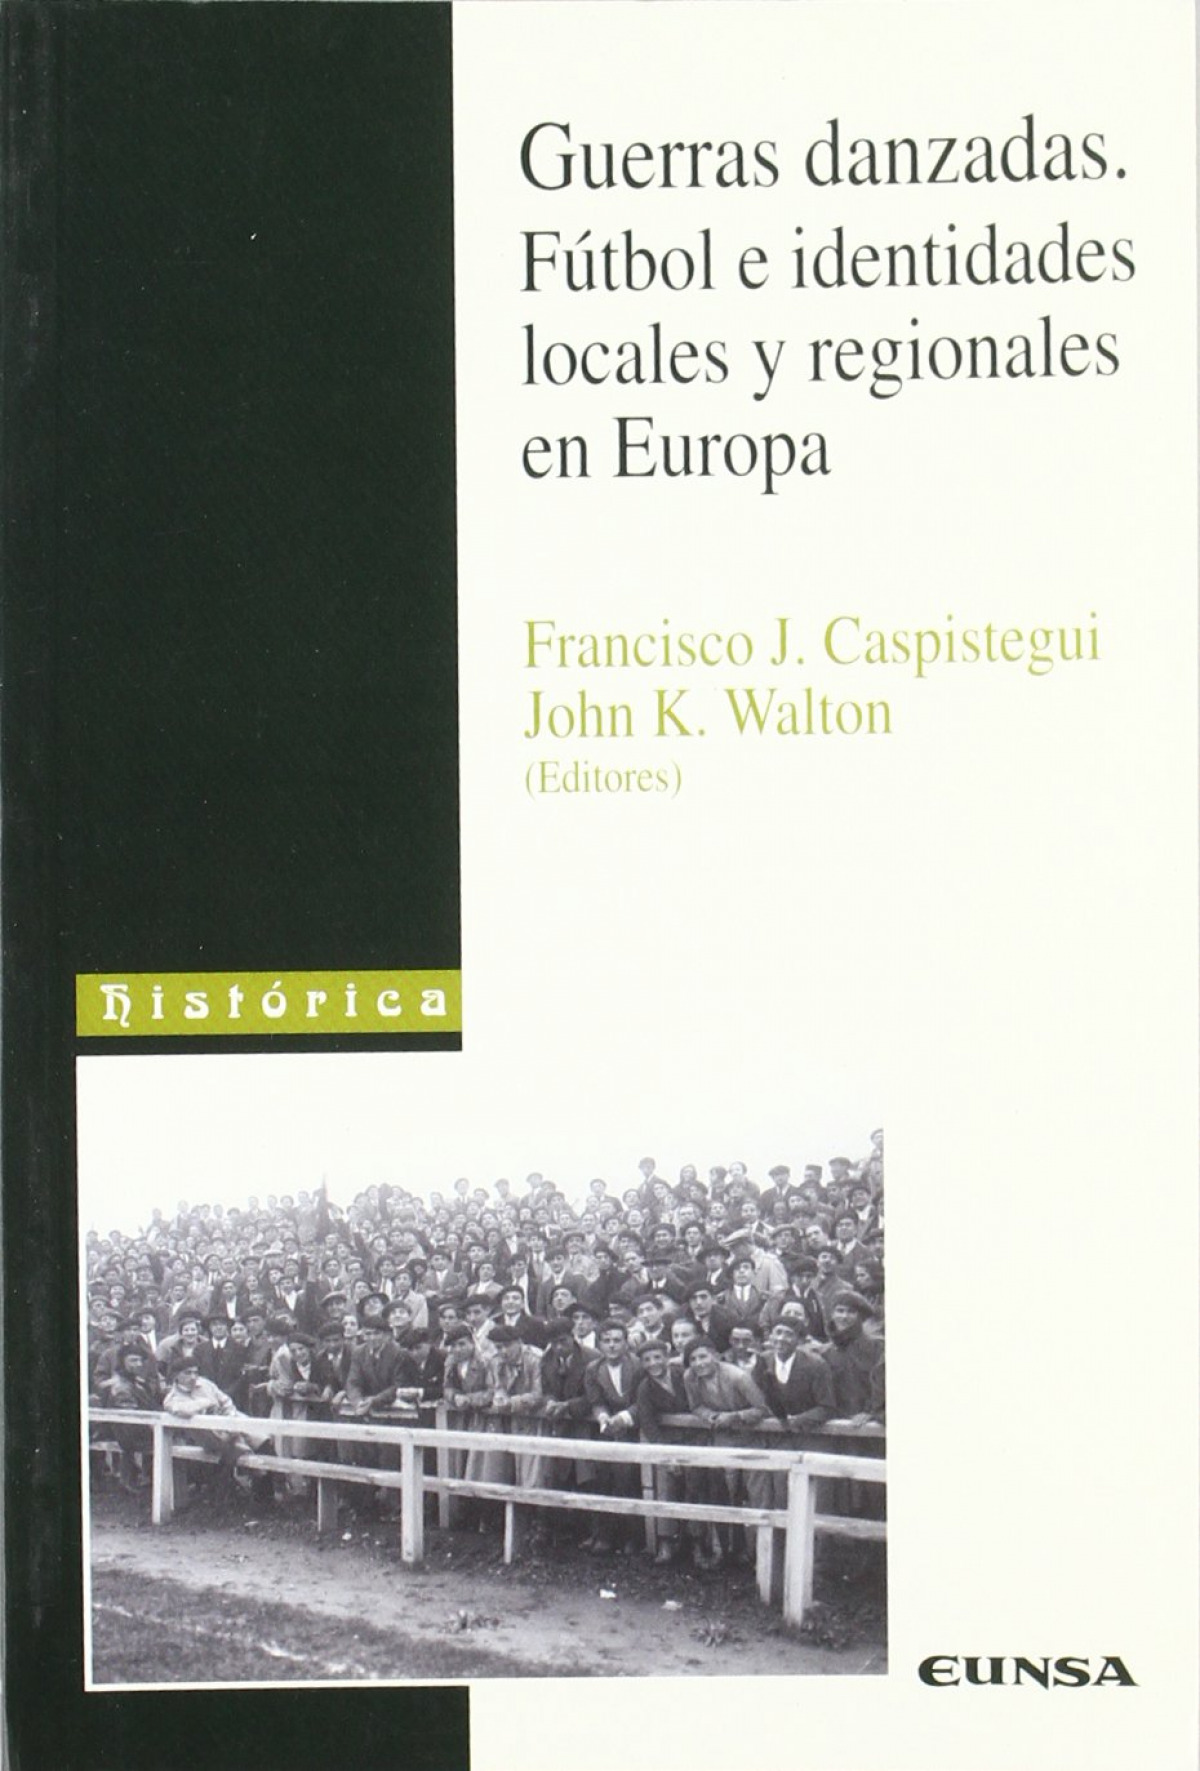 Guerras danzadas. Fútbol e identidades locales y regionales en Europa - F J. Caspistegui, John K. Walton